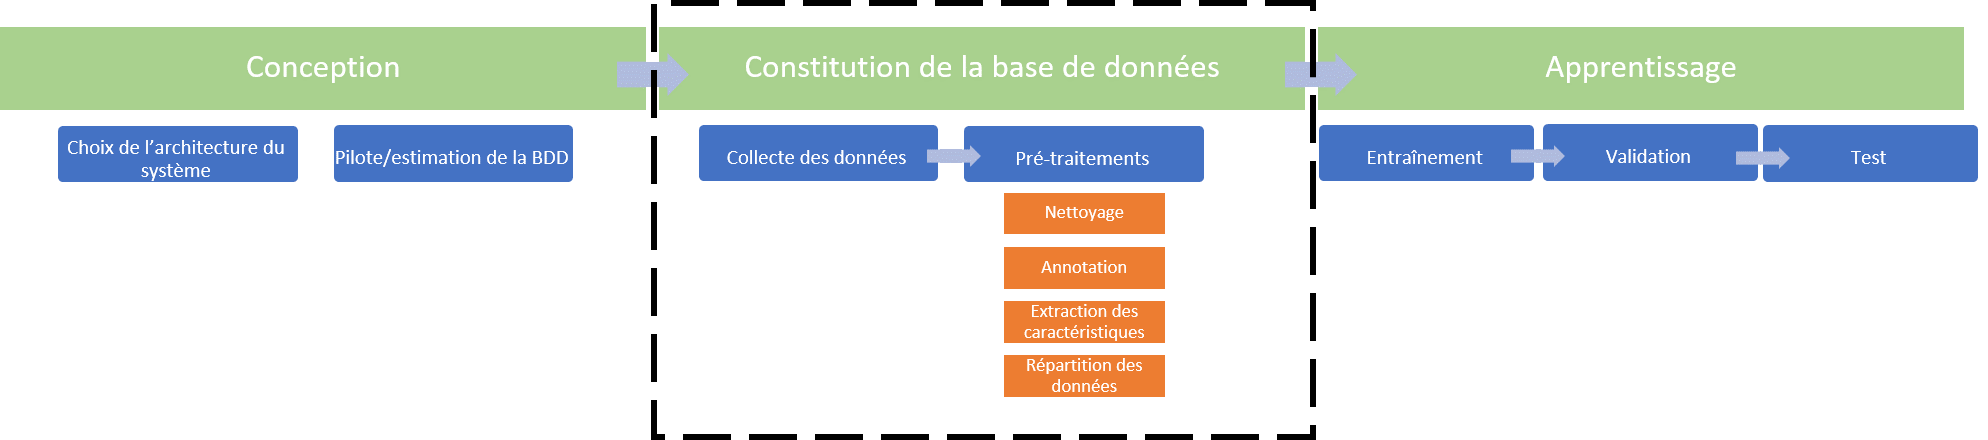 Phase de constitution de la base de données